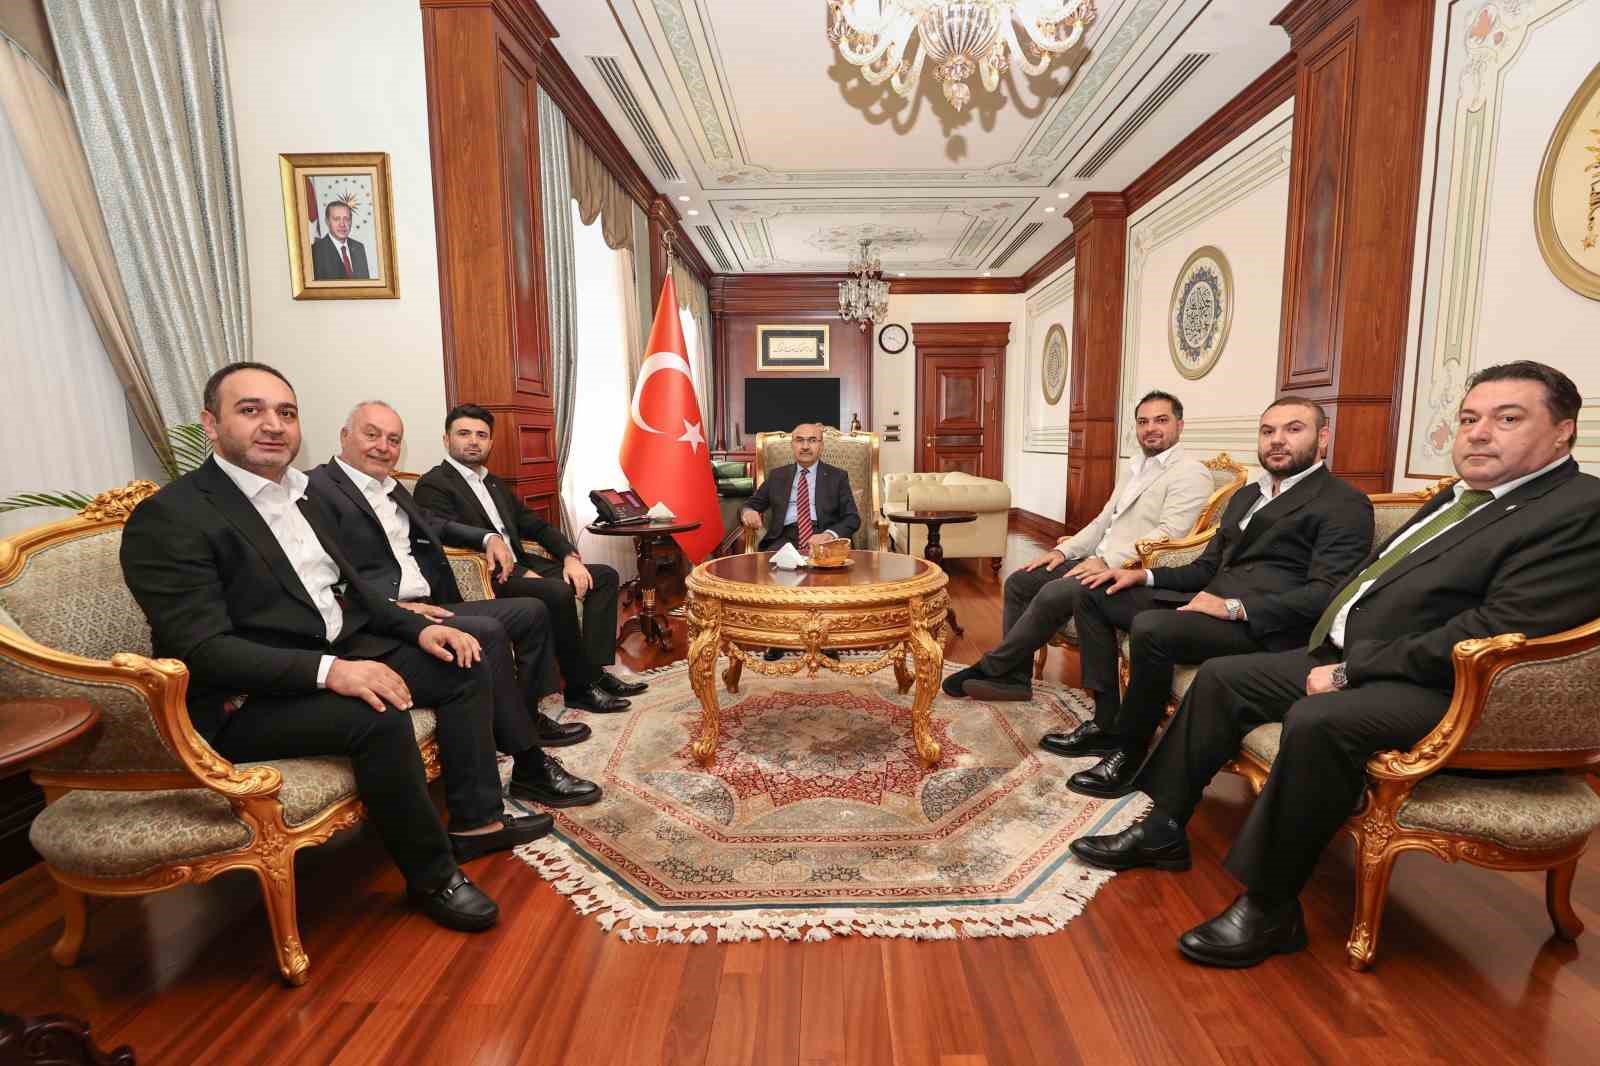 Bursaspor Yönetimi, Bursa Valisi Mahmut Demirtaşı Ziyaret Etti